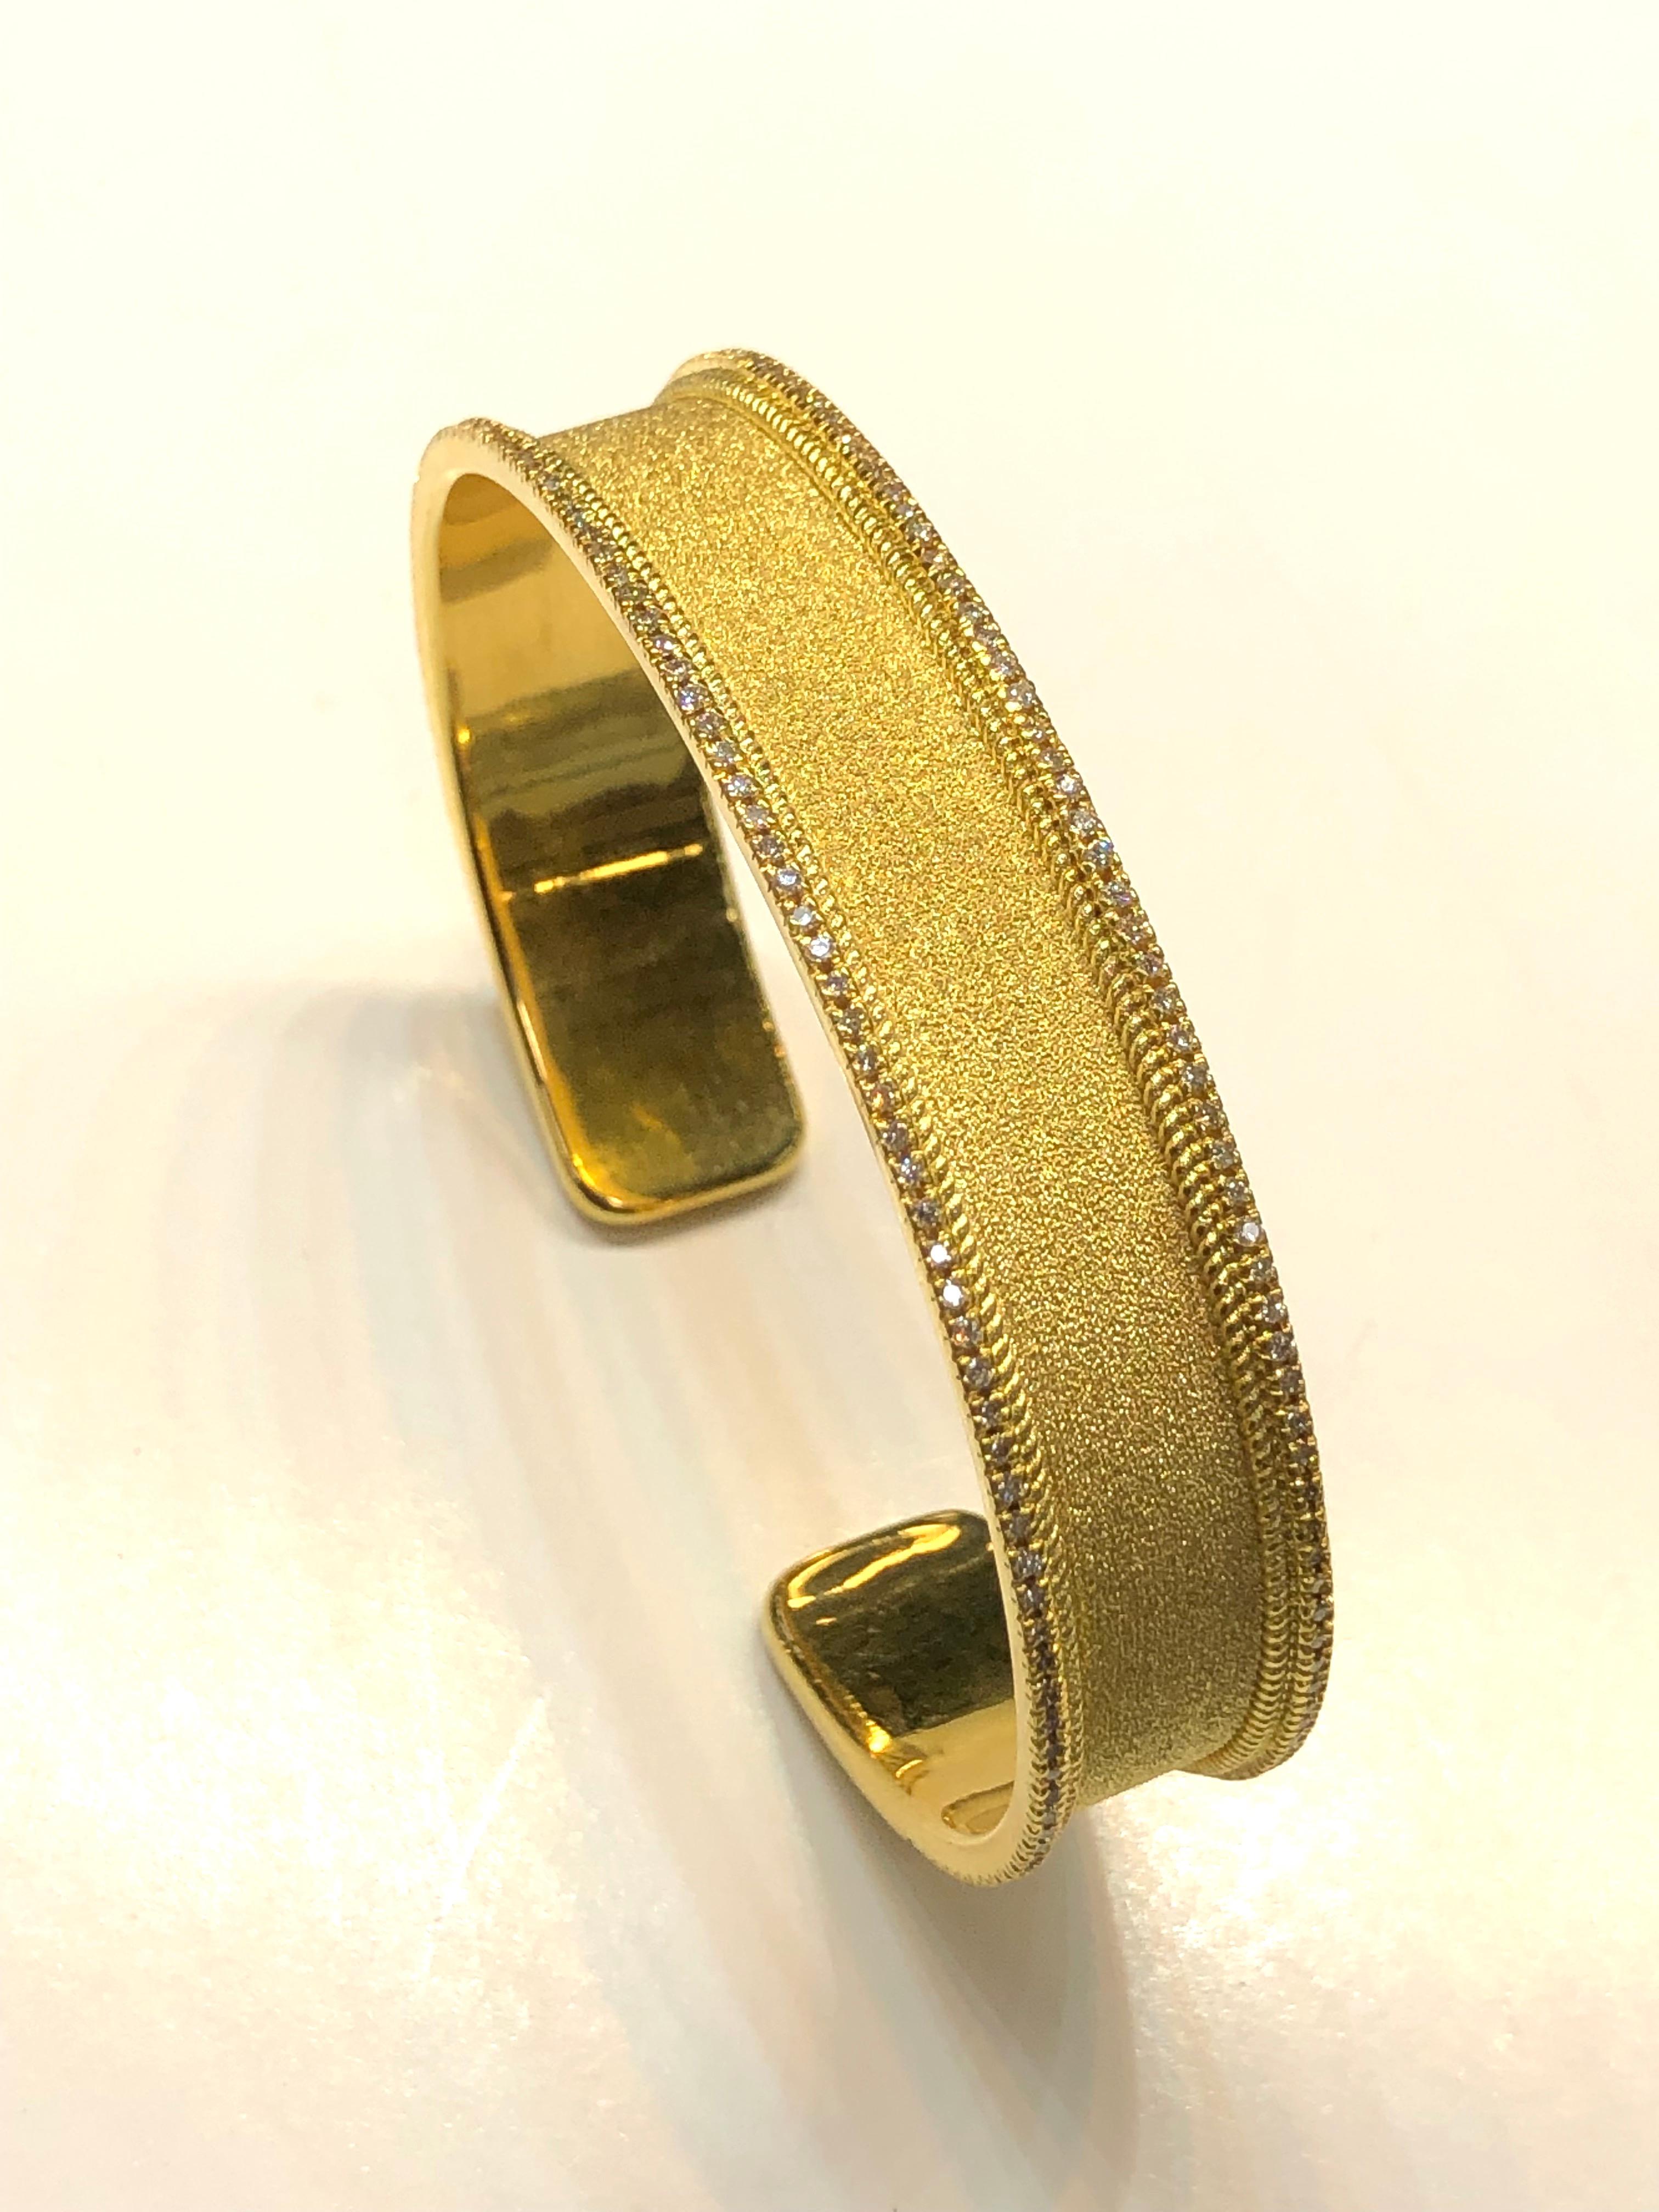 S.Georgios Designer-Armband, handgefertigt aus 18 Karat Gelbgold. Dieses Armband ist im byzantinischen Stil mit dem einzigartigen Samtlook auf dem Hintergrund gefertigt. Das Armband verfügt über weiße Diamanten im Brillantschliff mit einem